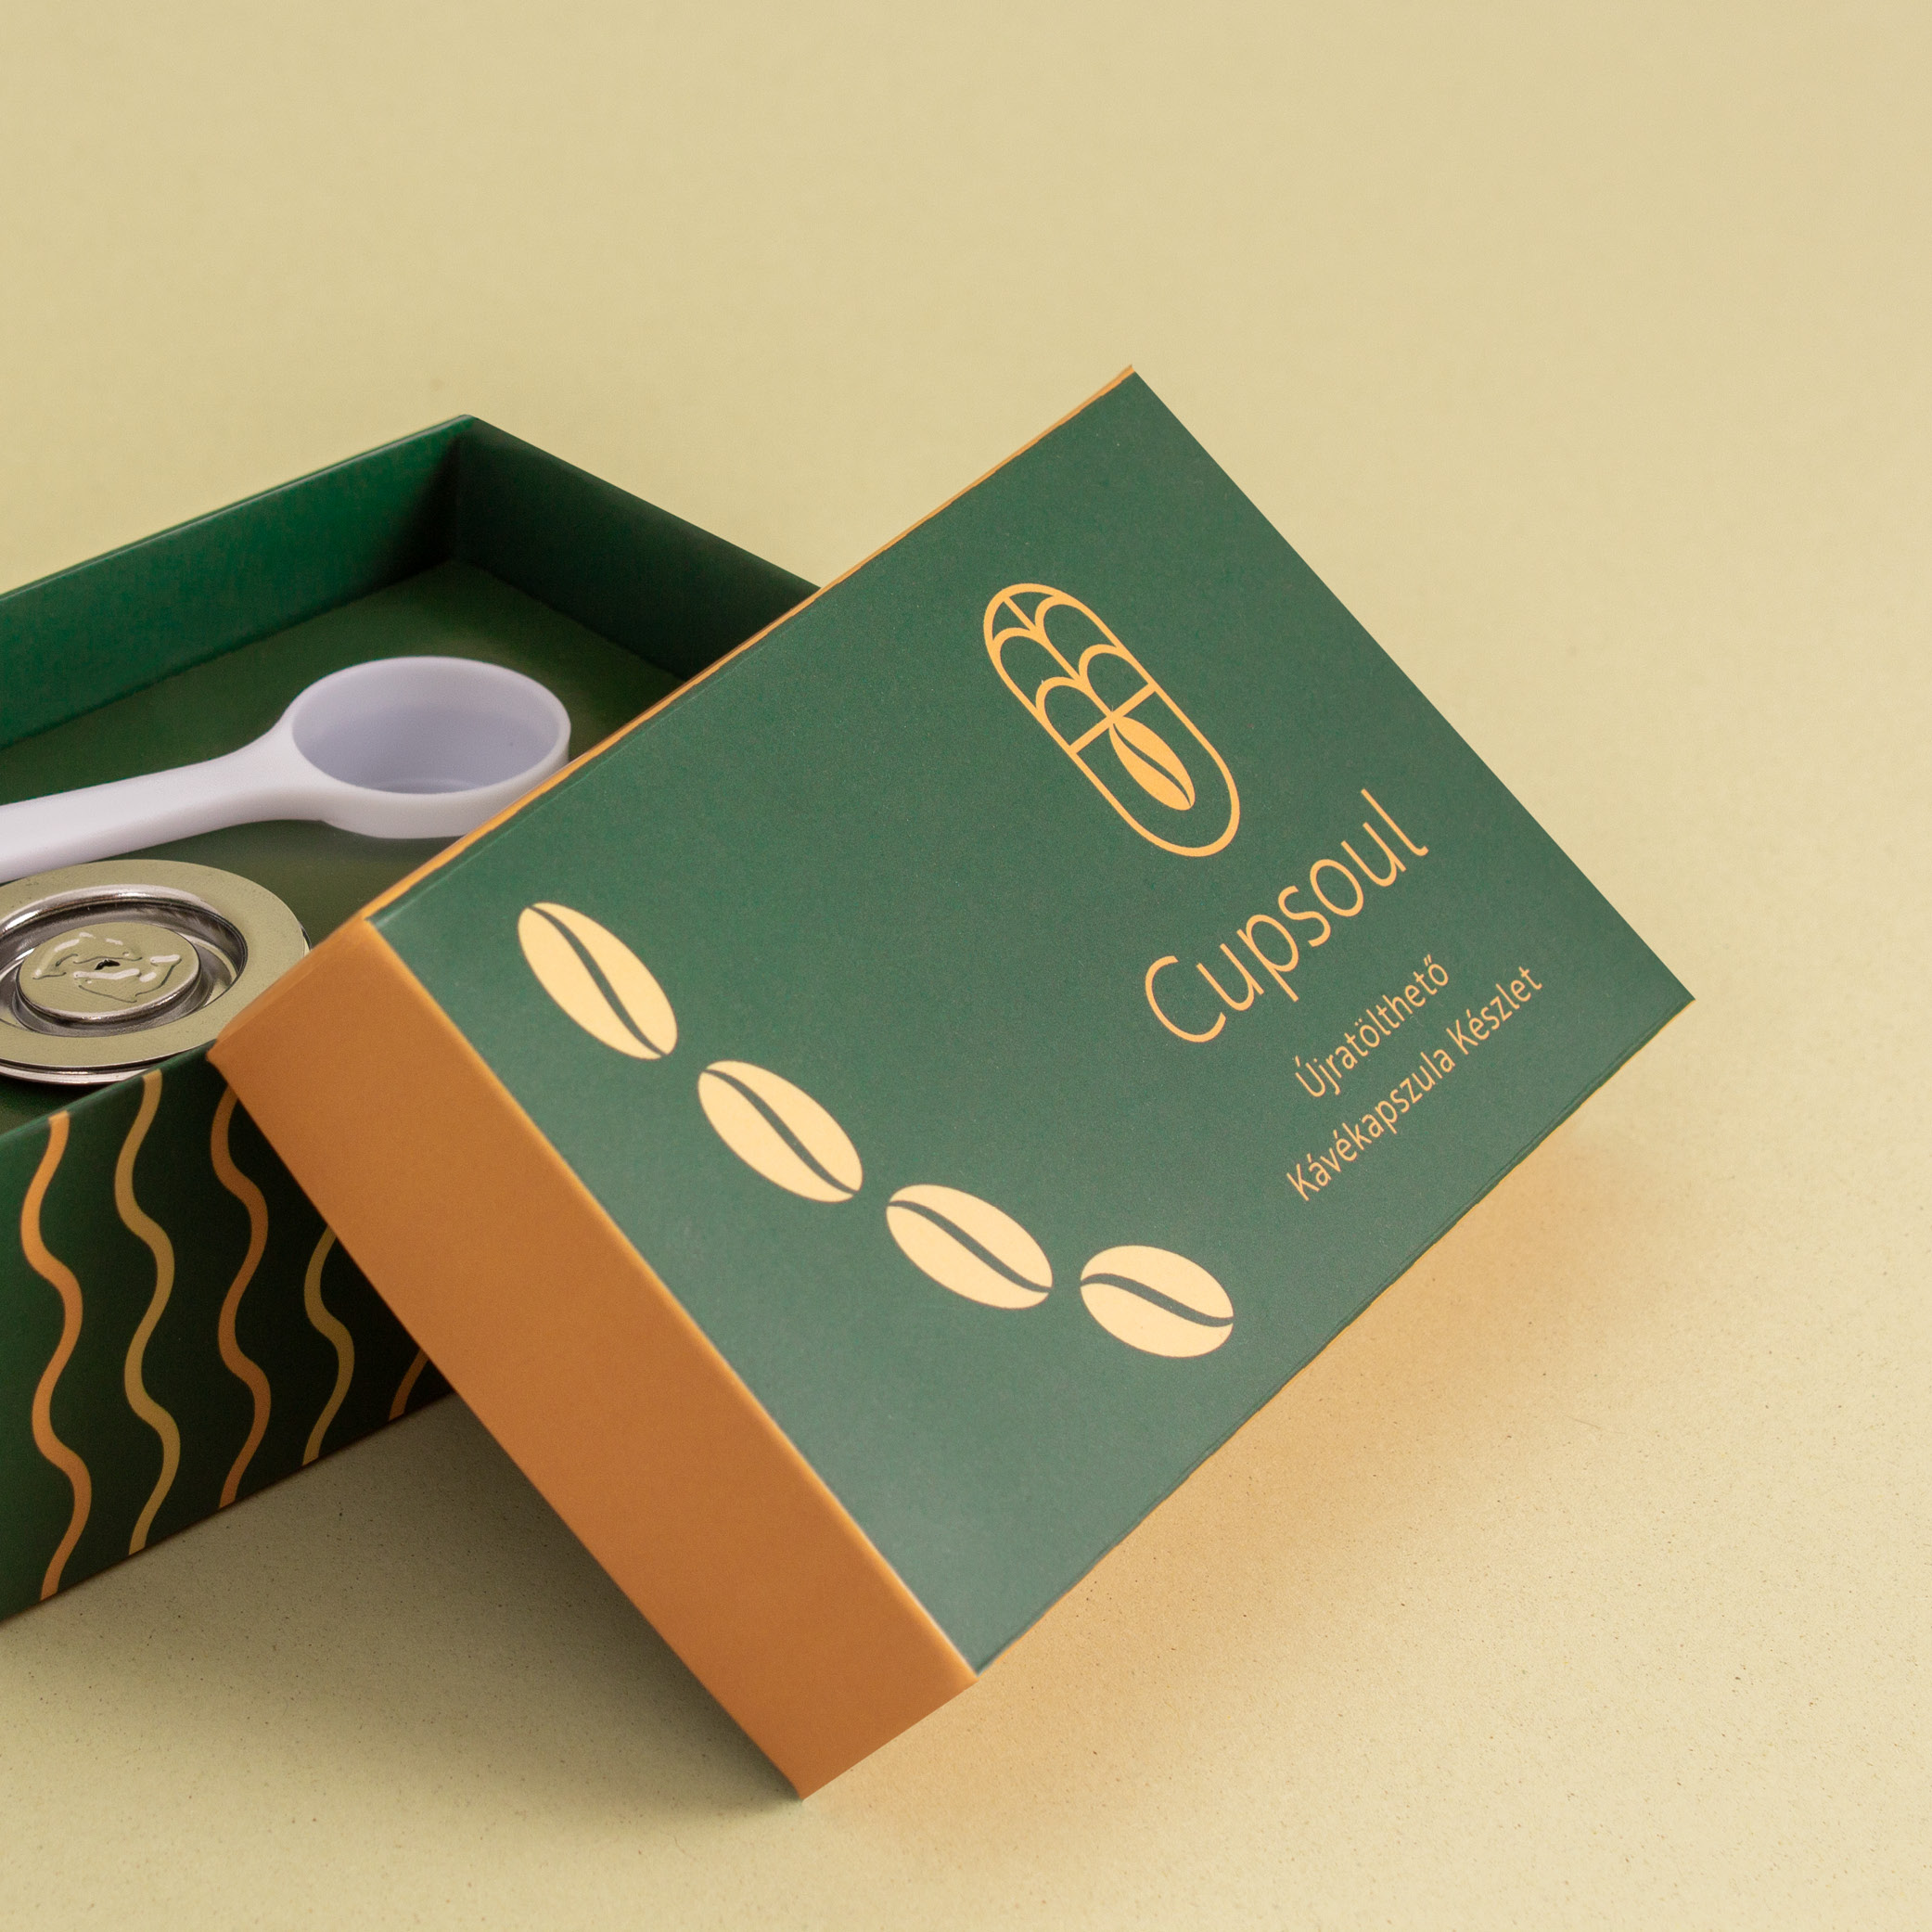 CUPSOUL可重复使用的胶囊咖啡包装设计参考(图5)